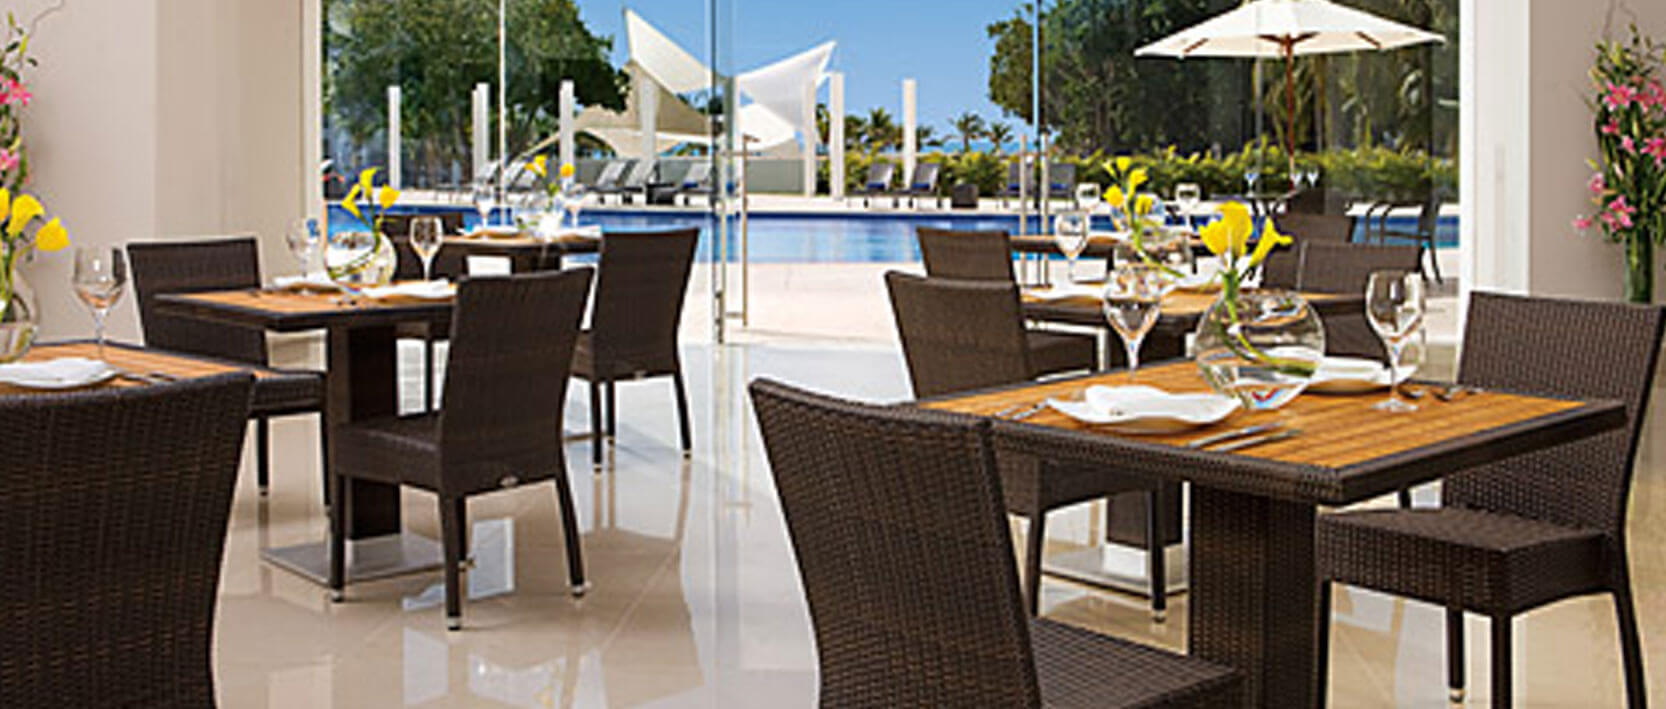 Dreams Villamagna Nuevo Vallarta Restaurants and Bars - World Cafe